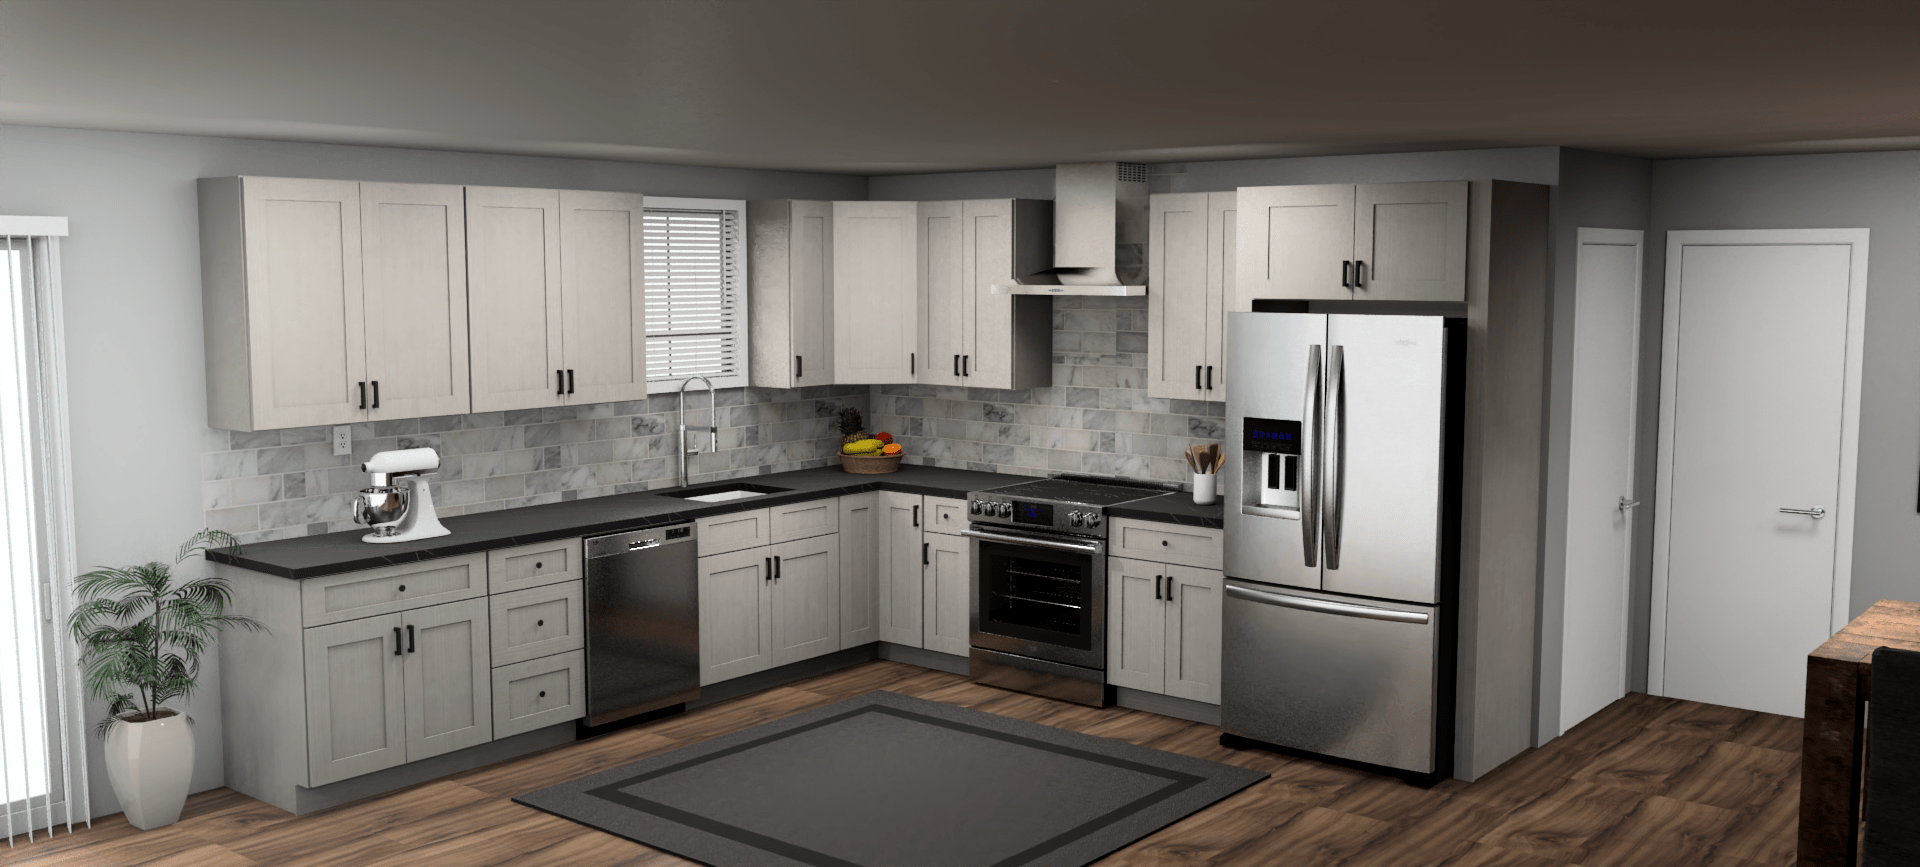 Fabuwood Allure Galaxy Horizon 12 x 12 L Shaped Kitchen Main Layout Photo